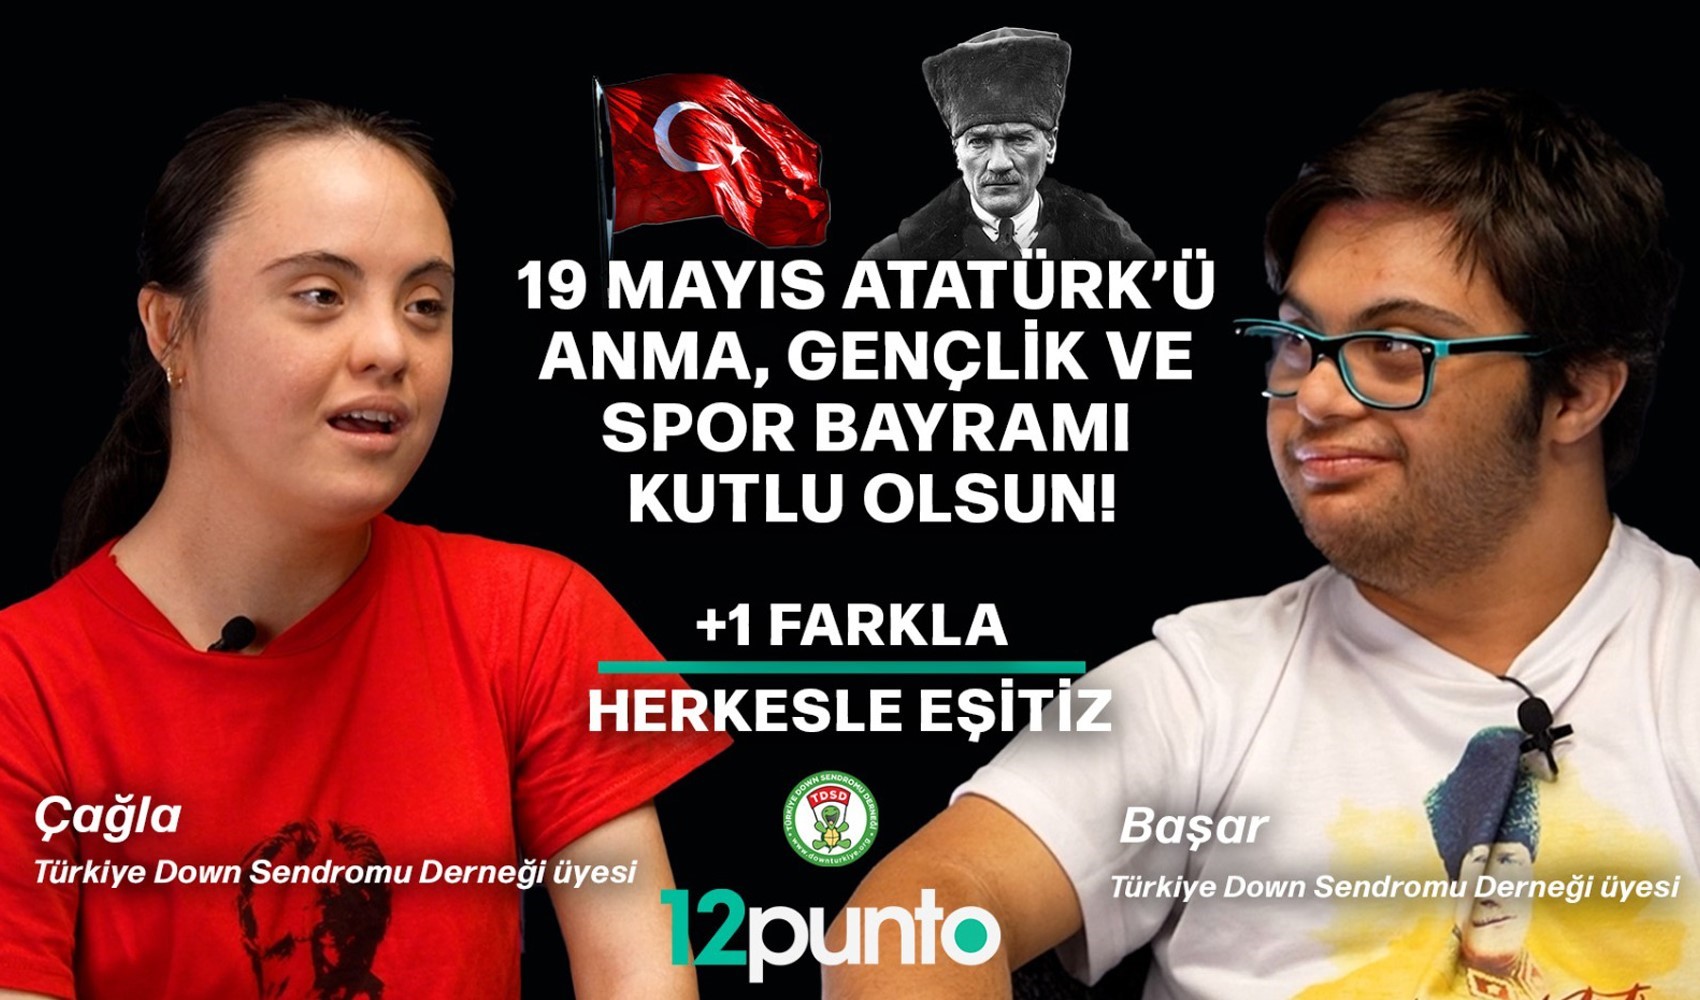 Türkiye Down Sendromu Derneği'nin iki değerli üyesi Özge ve Başar 12punto'nun konuğu oldu: 'Hayatın içindeyiz'